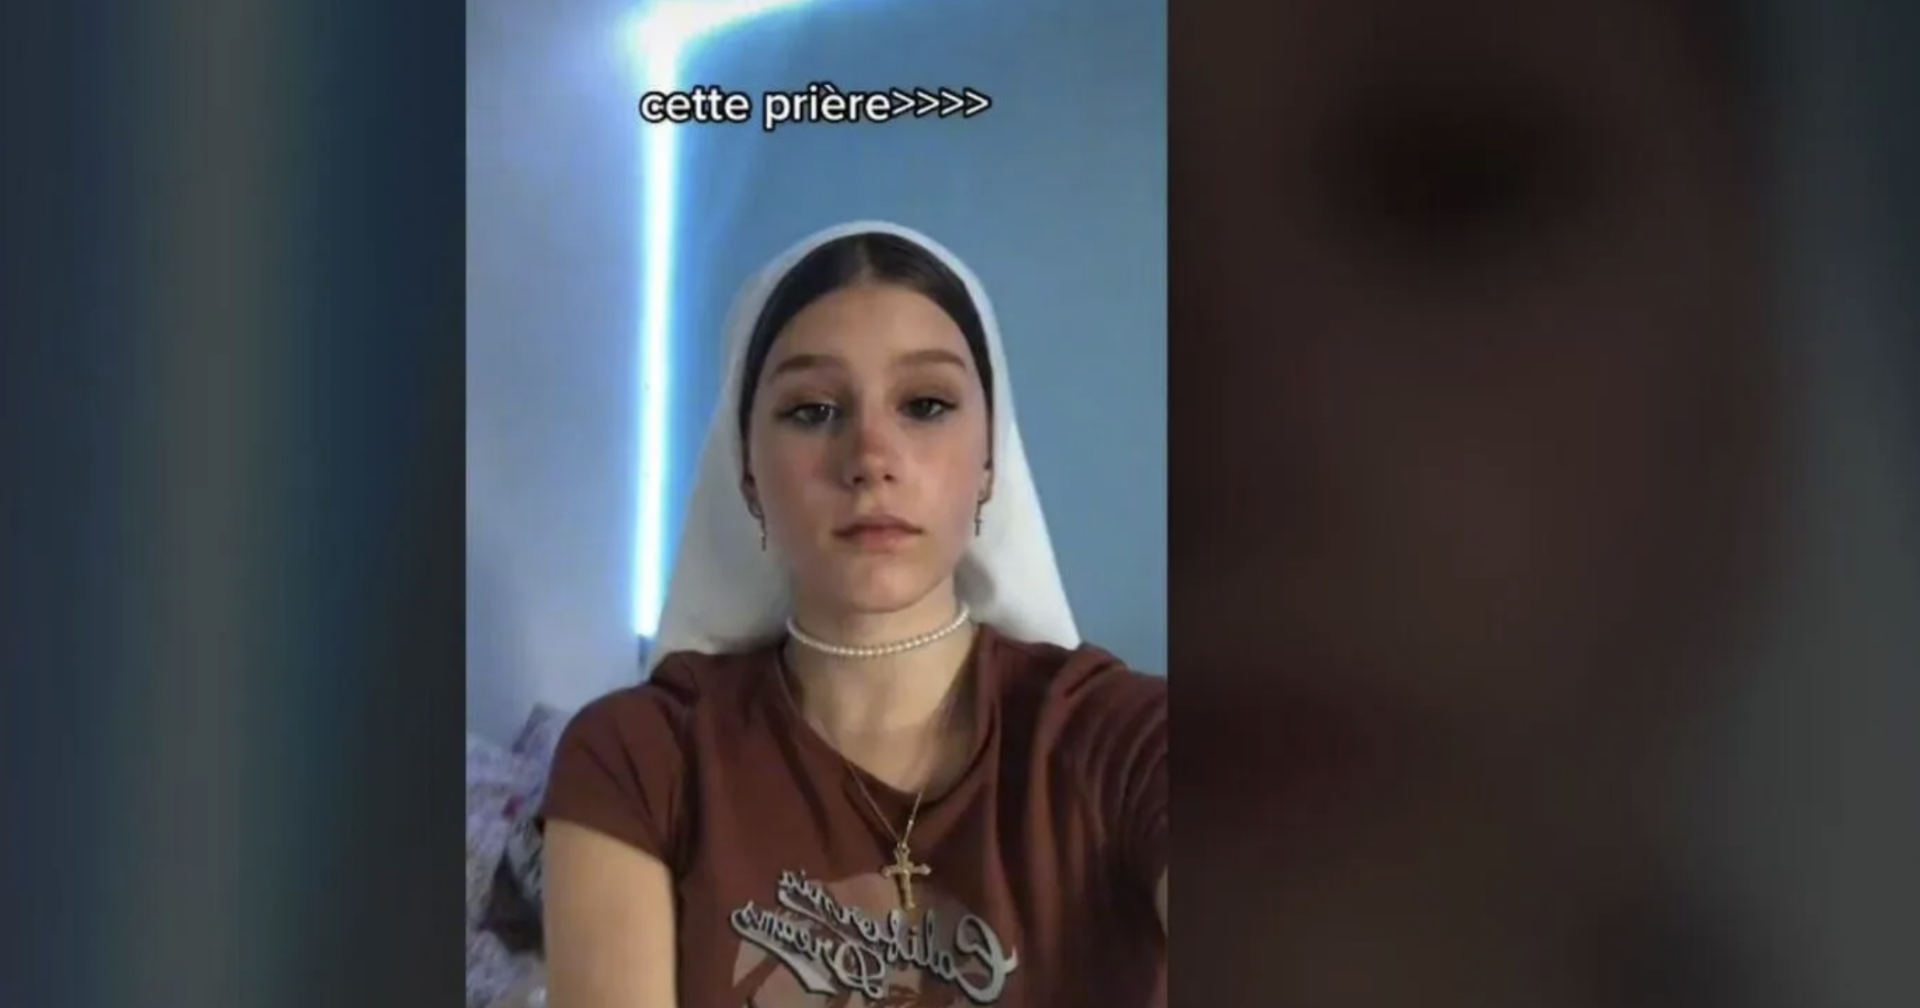 Des adolescentes chrétiennes se filment sur TikTok avec le voile | TikTok, capture d'écran